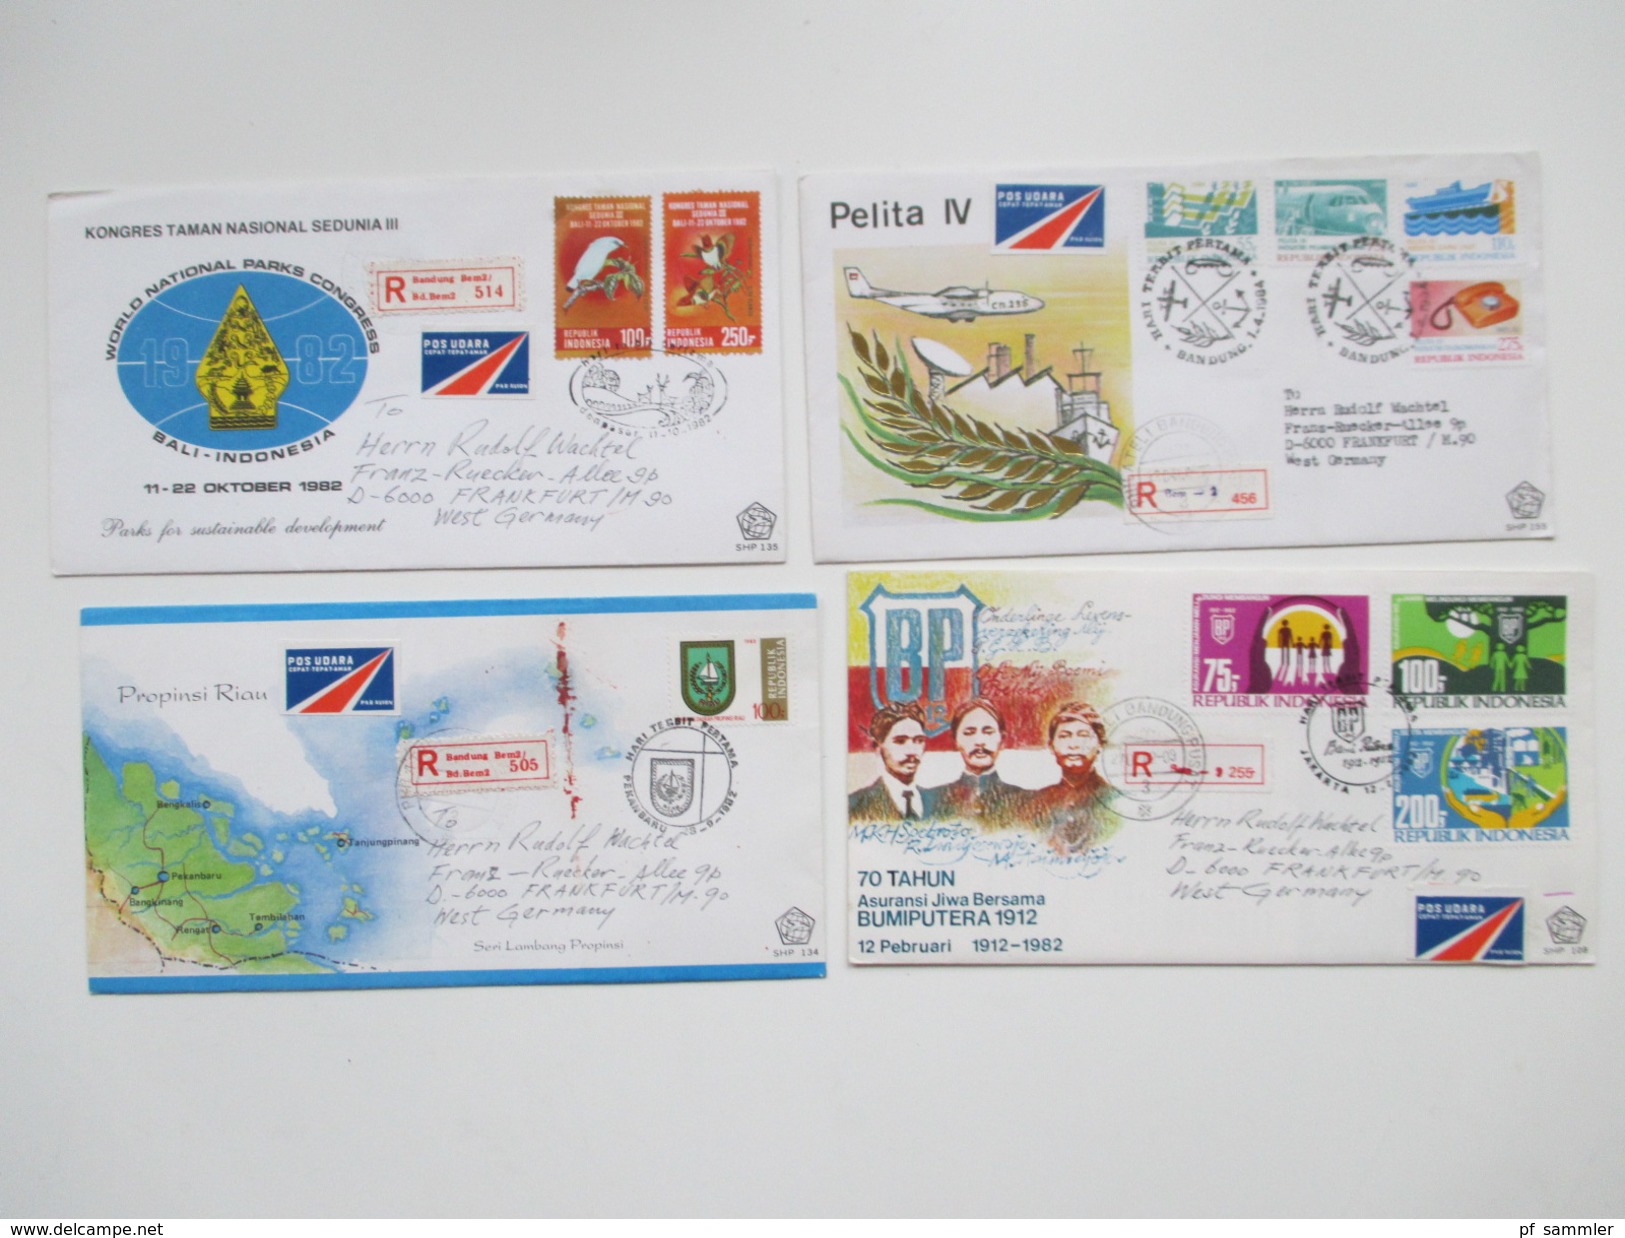 Indonesien 125 stk. 1954 - 84 FDC / R-Briefe / Luftpost alles echt gelaufen! Einige Blocks 80er Jahre und 1 Numisbrief.